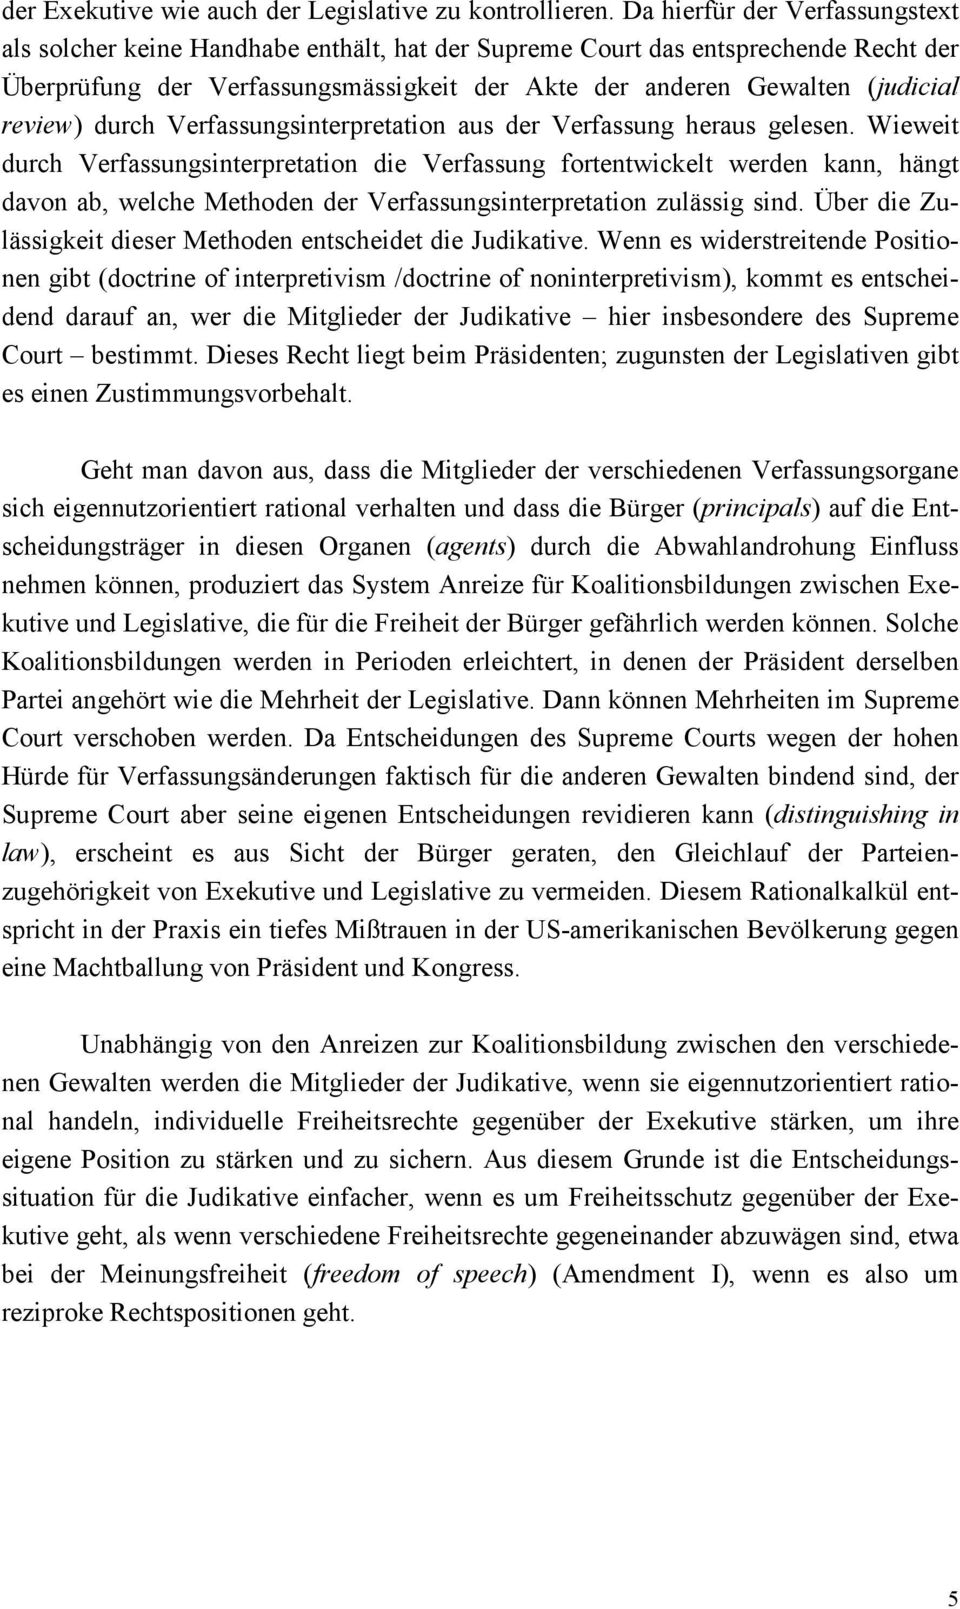 review) durch Verfassungsinterpretation aus der Verfassung heraus gelesen.